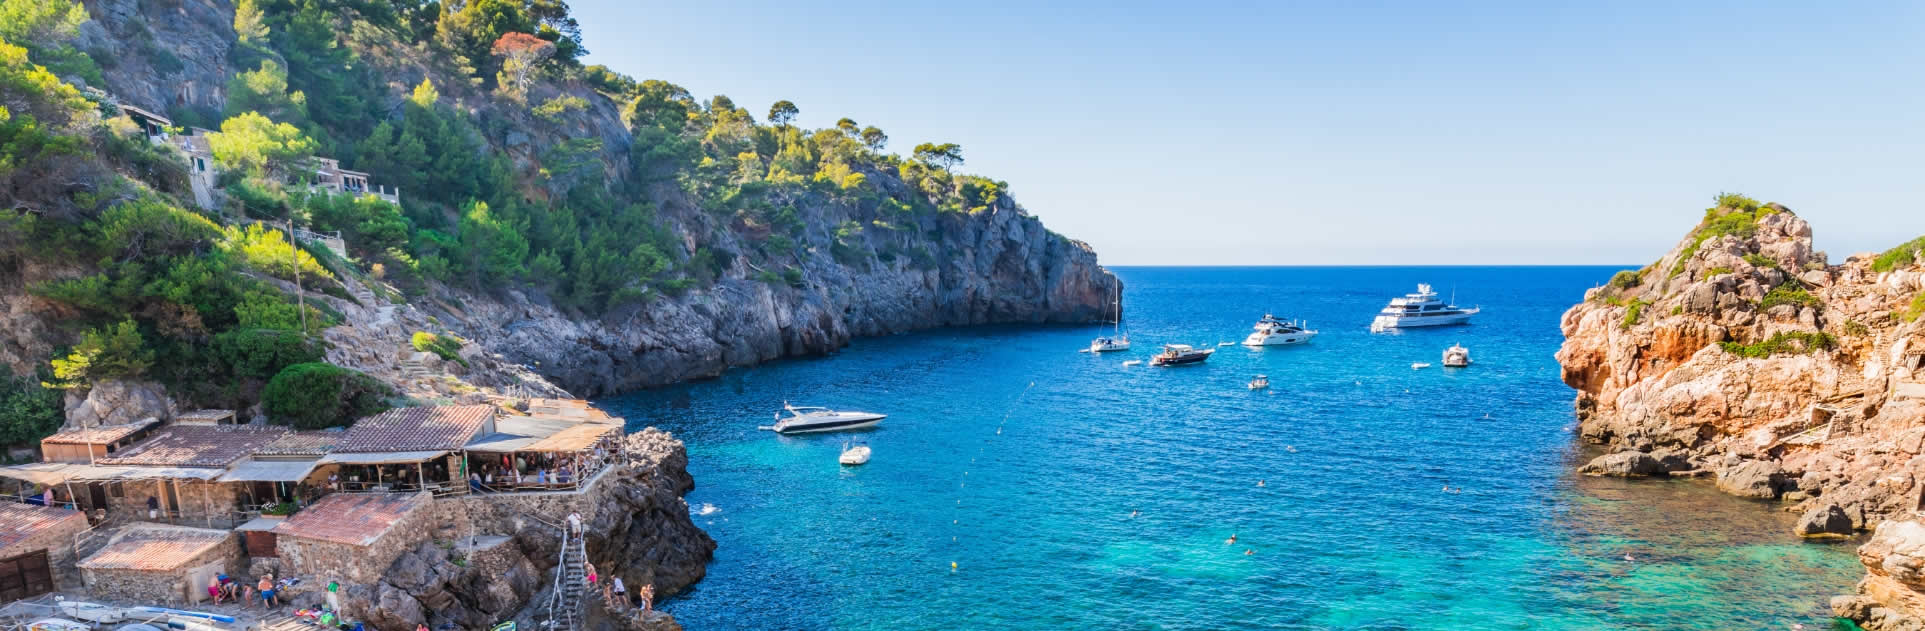 Verano en Mallorca con Mix Hotels